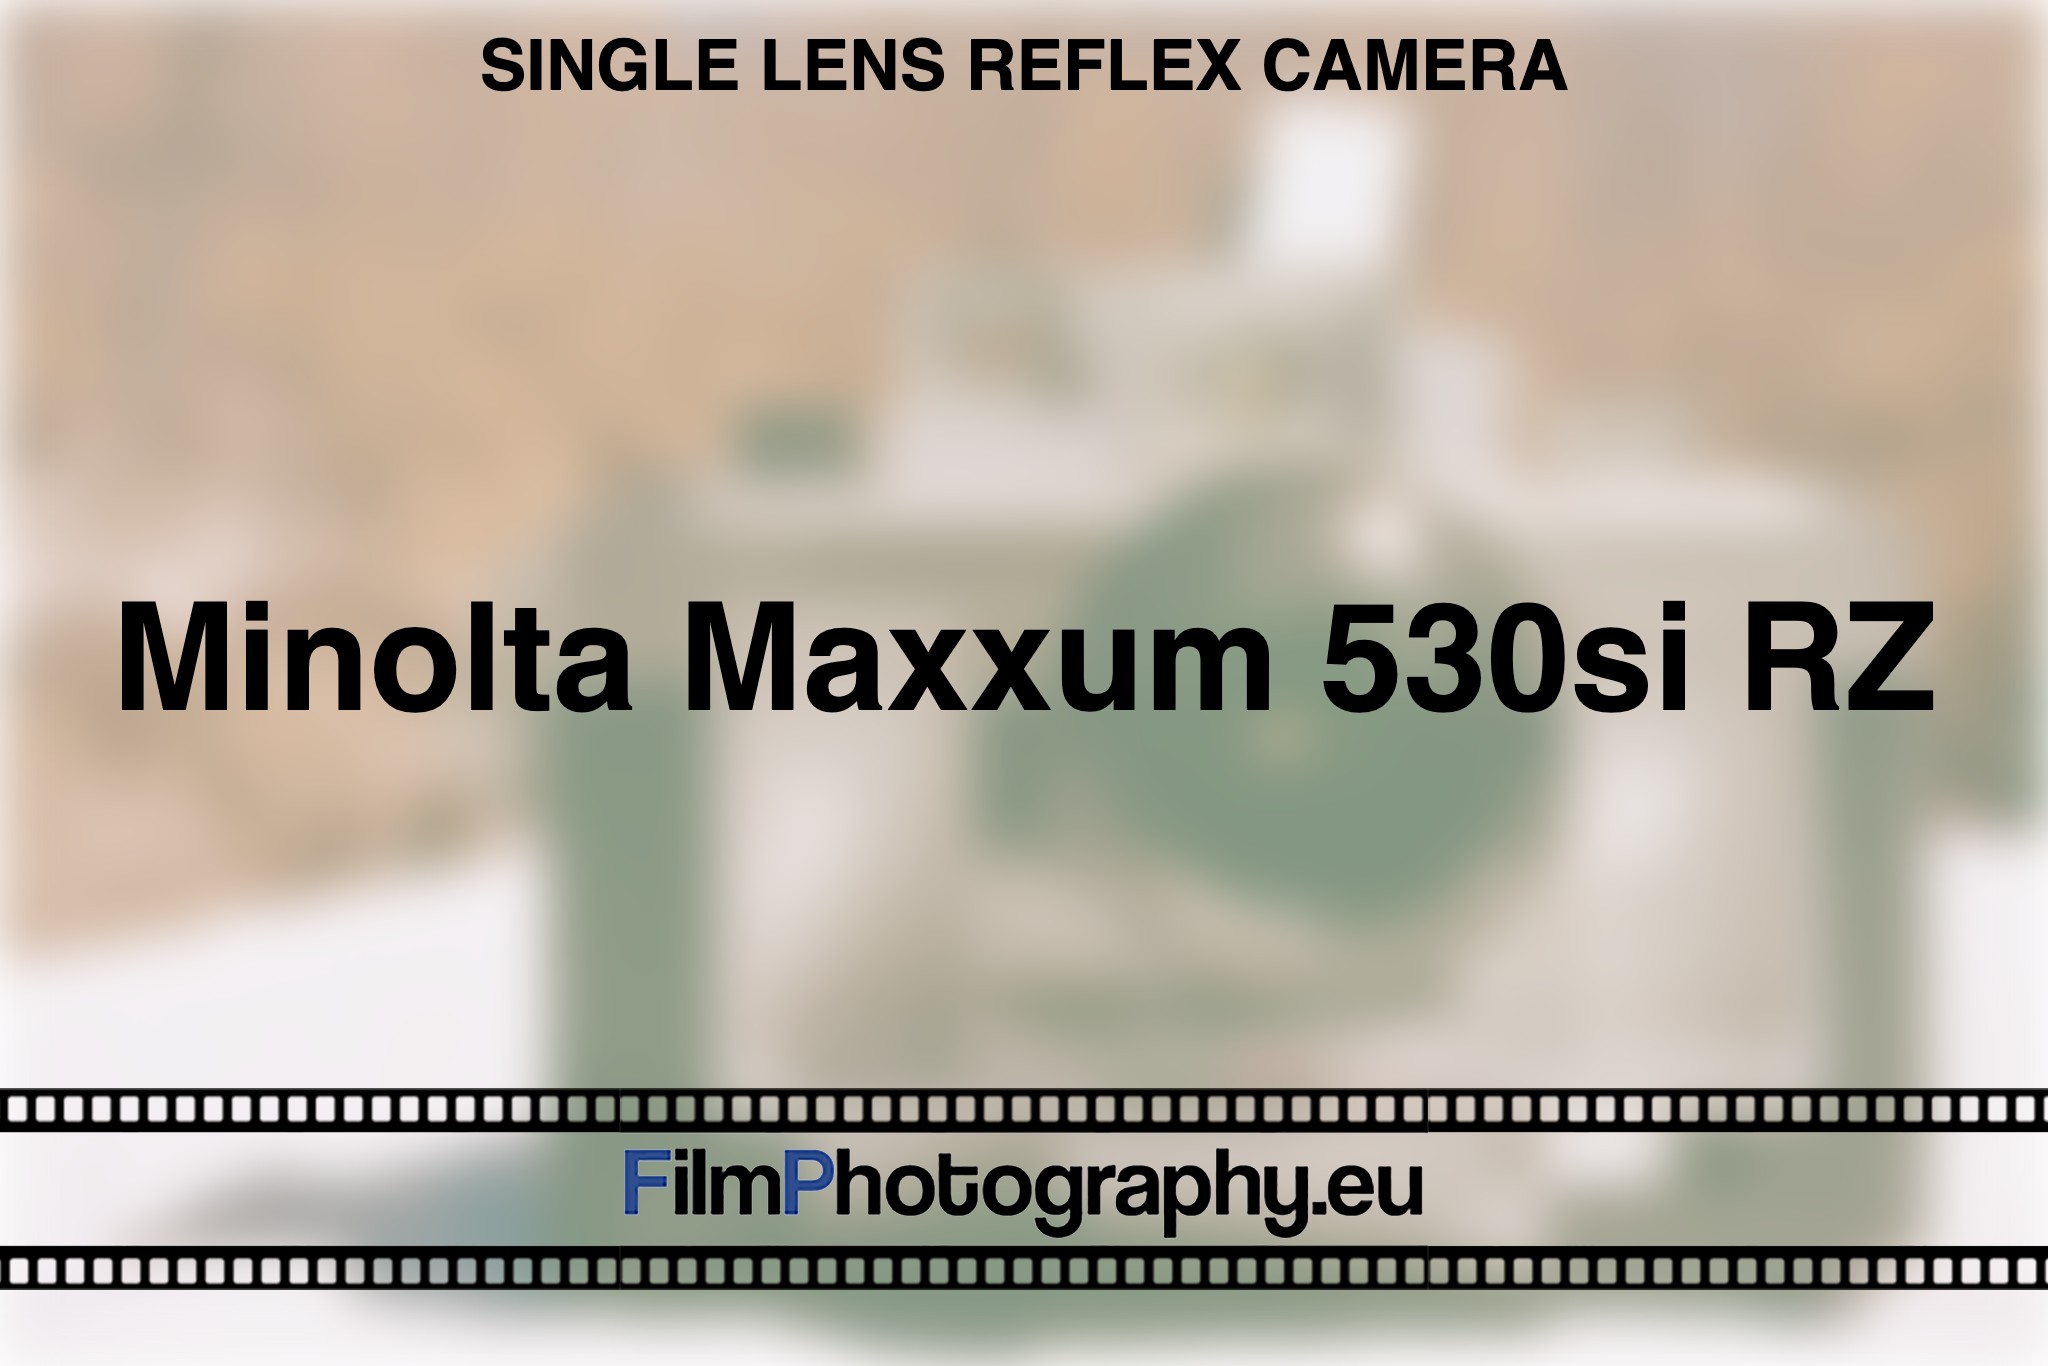 minolta-maxxum-530si-rz-single-lens-reflex-camera-bnv